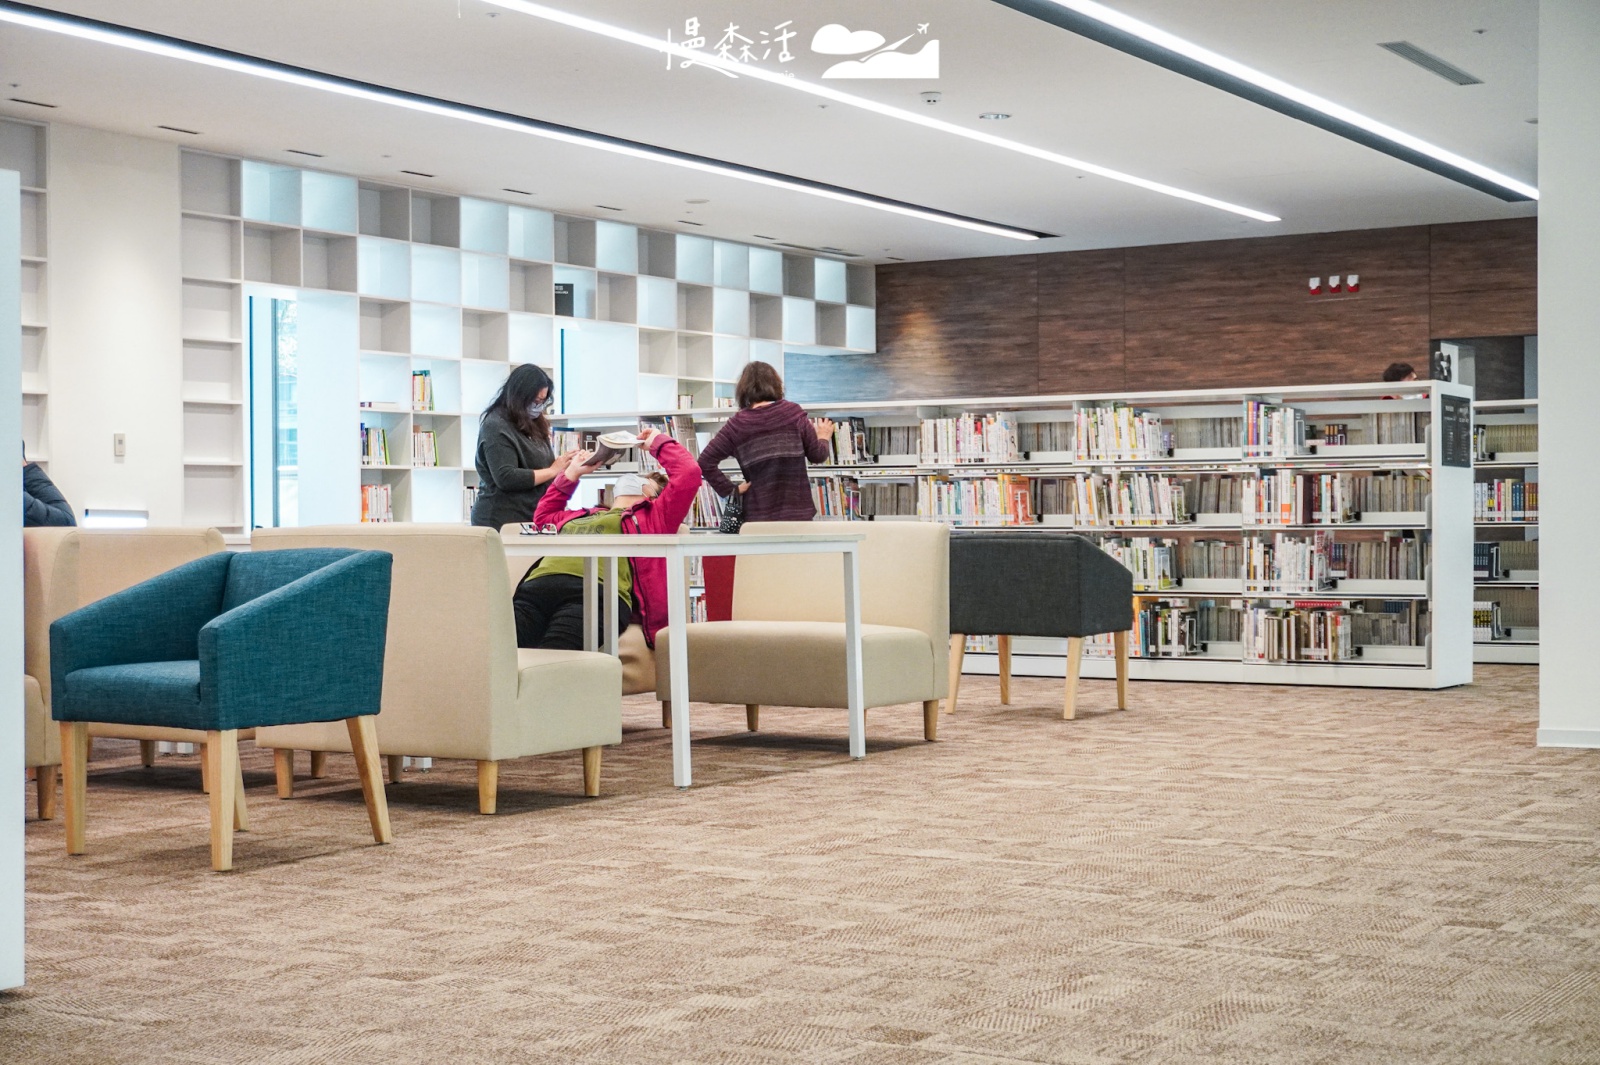 桃園市立圖書館新總館 館內2樓樂齡閱覽區空間